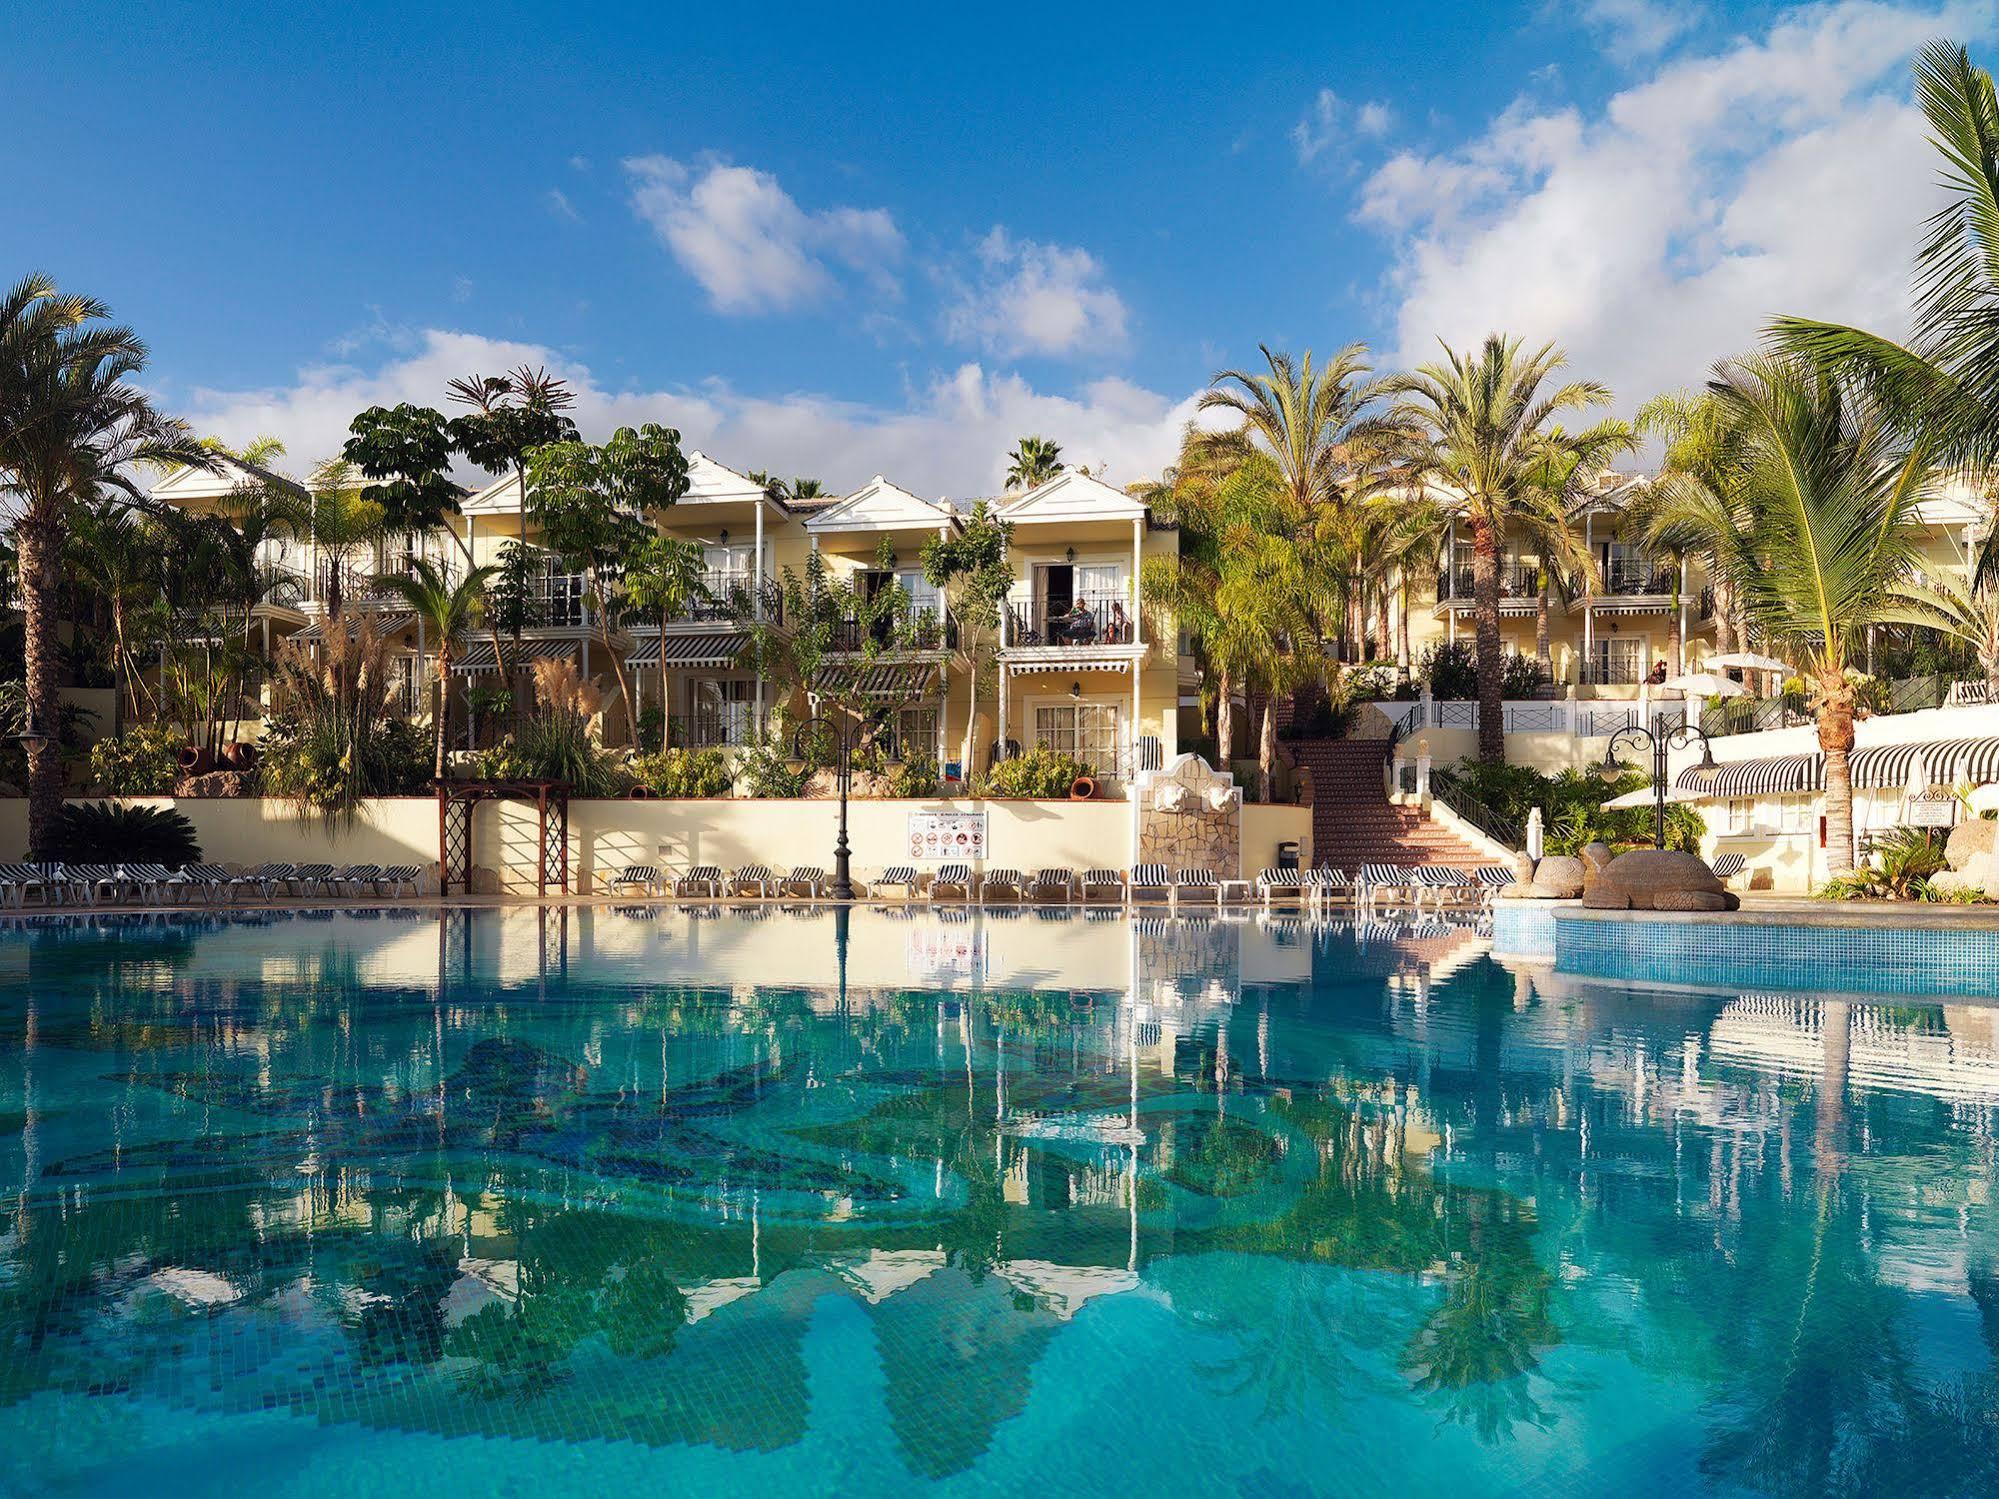 View Gran Oasis Resort's beautiful main pool in dramatic Tenerife.